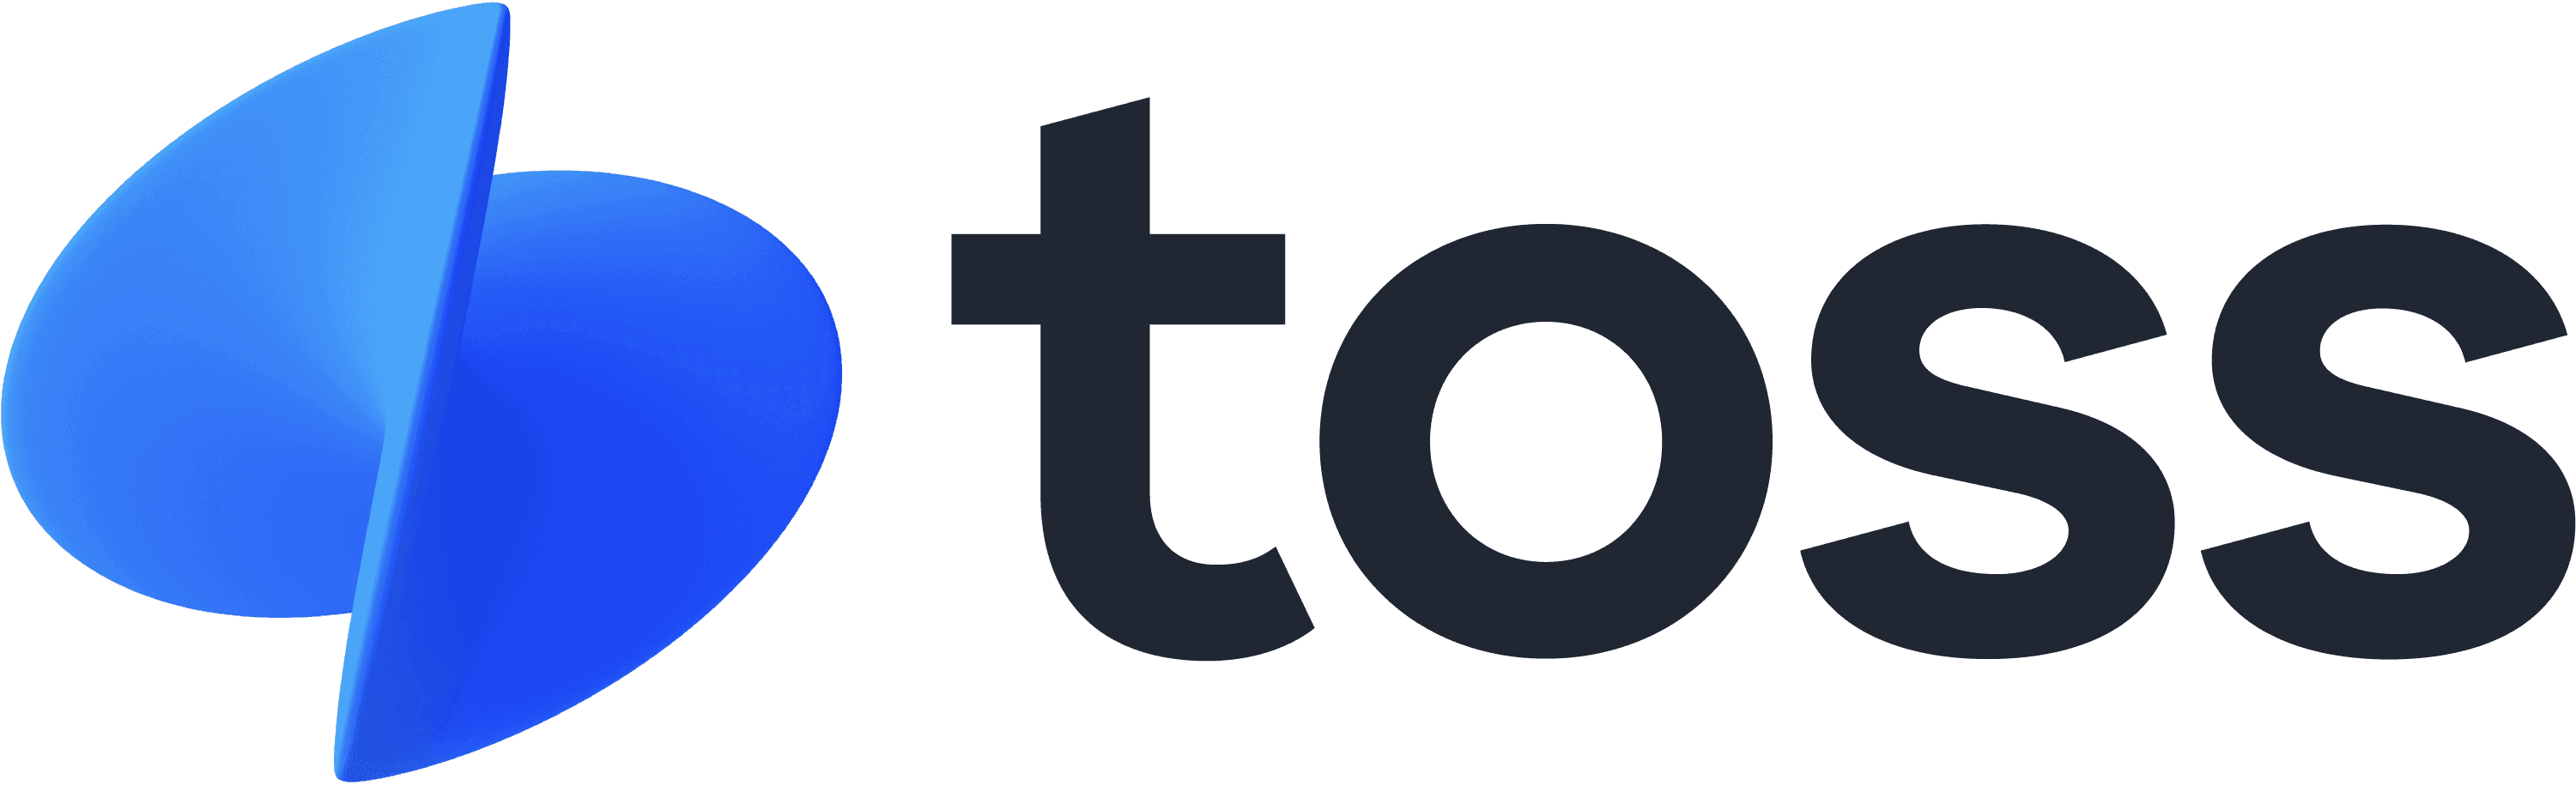 Toss logo